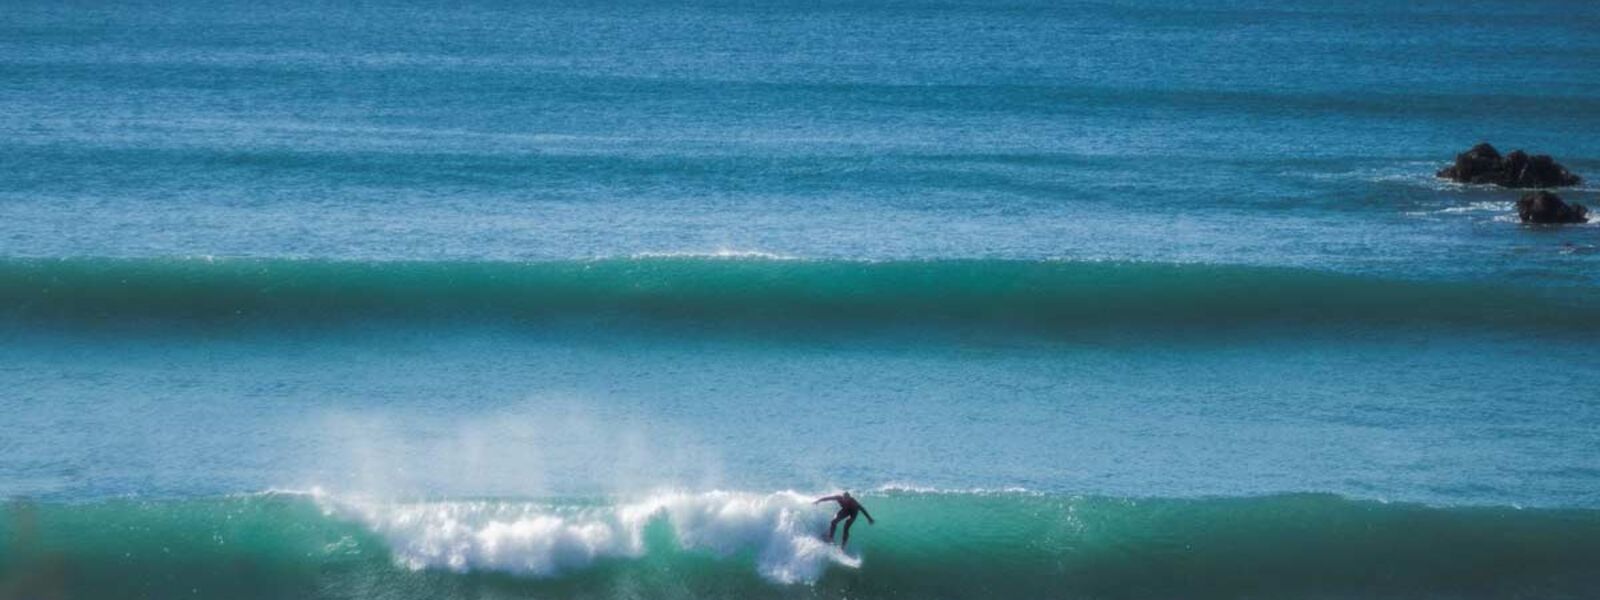 Surfen in Conil an einem der besten Surfspots Spaniens